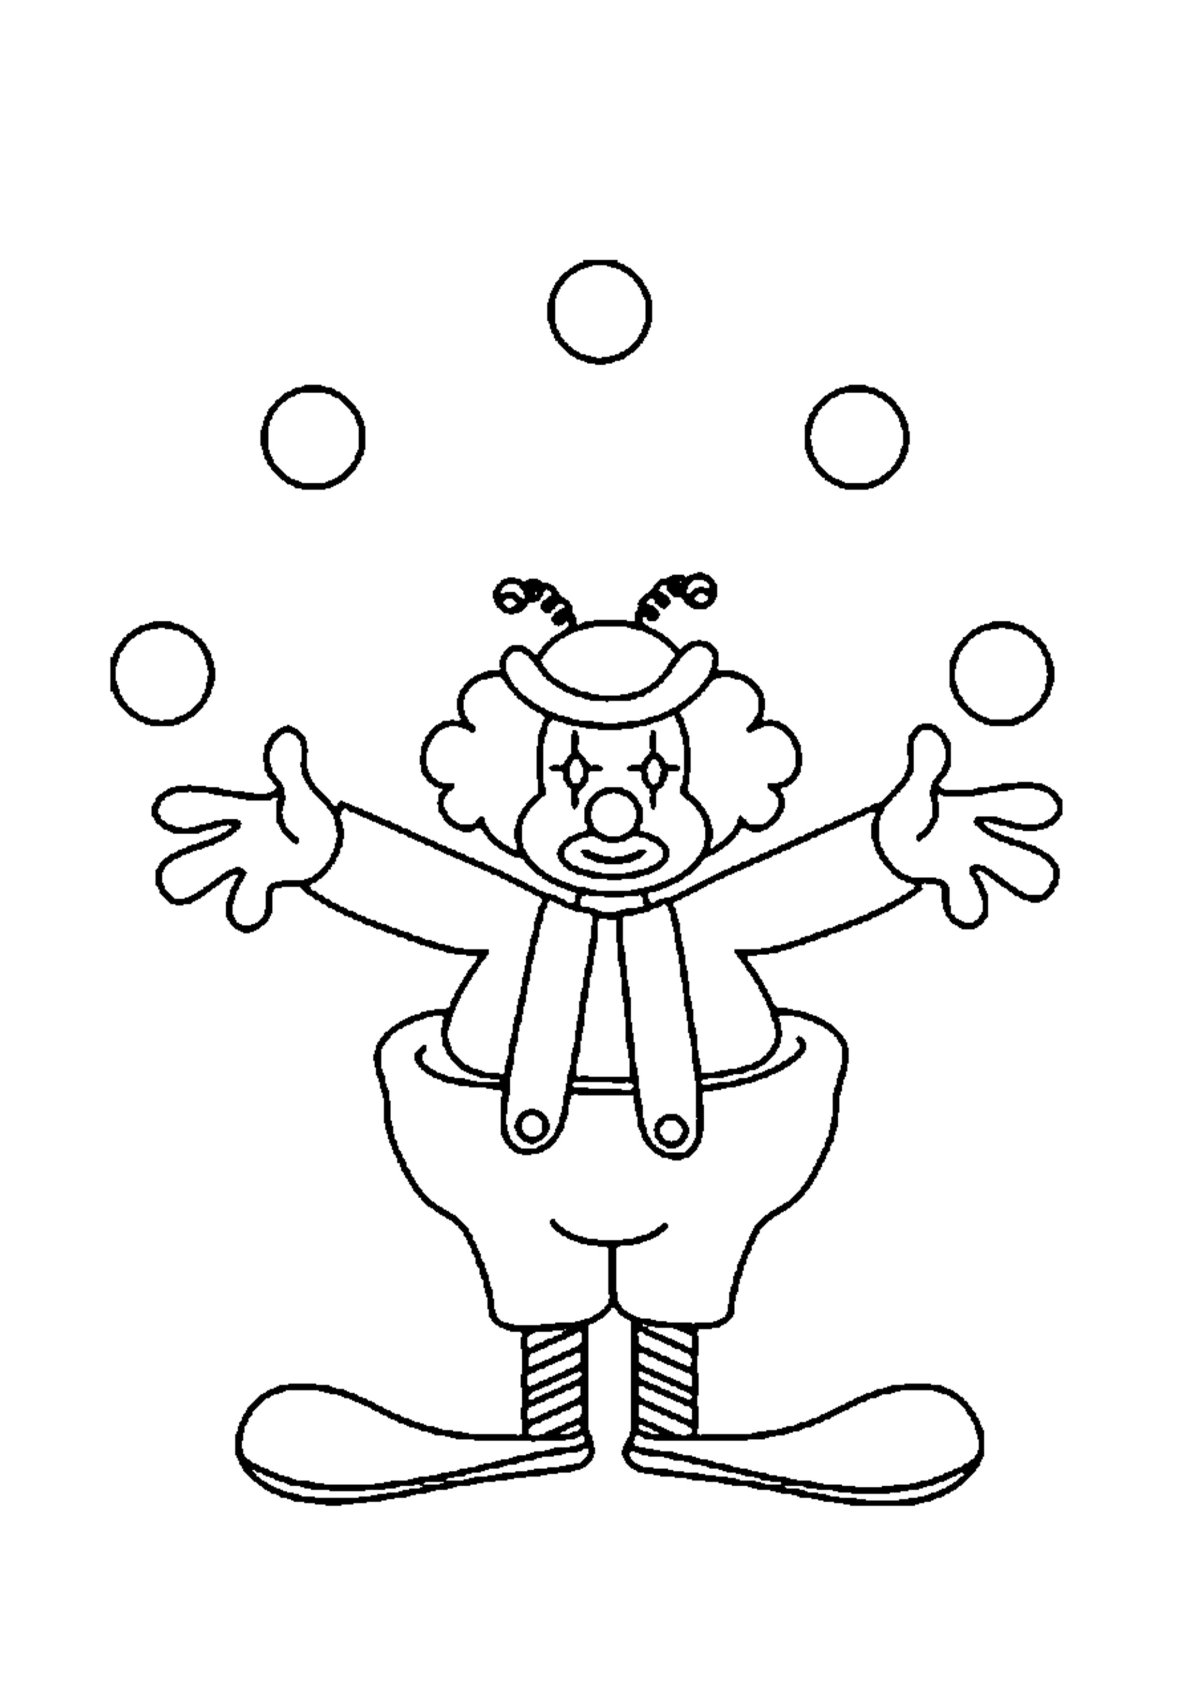 Рисунок клоуна пошагово